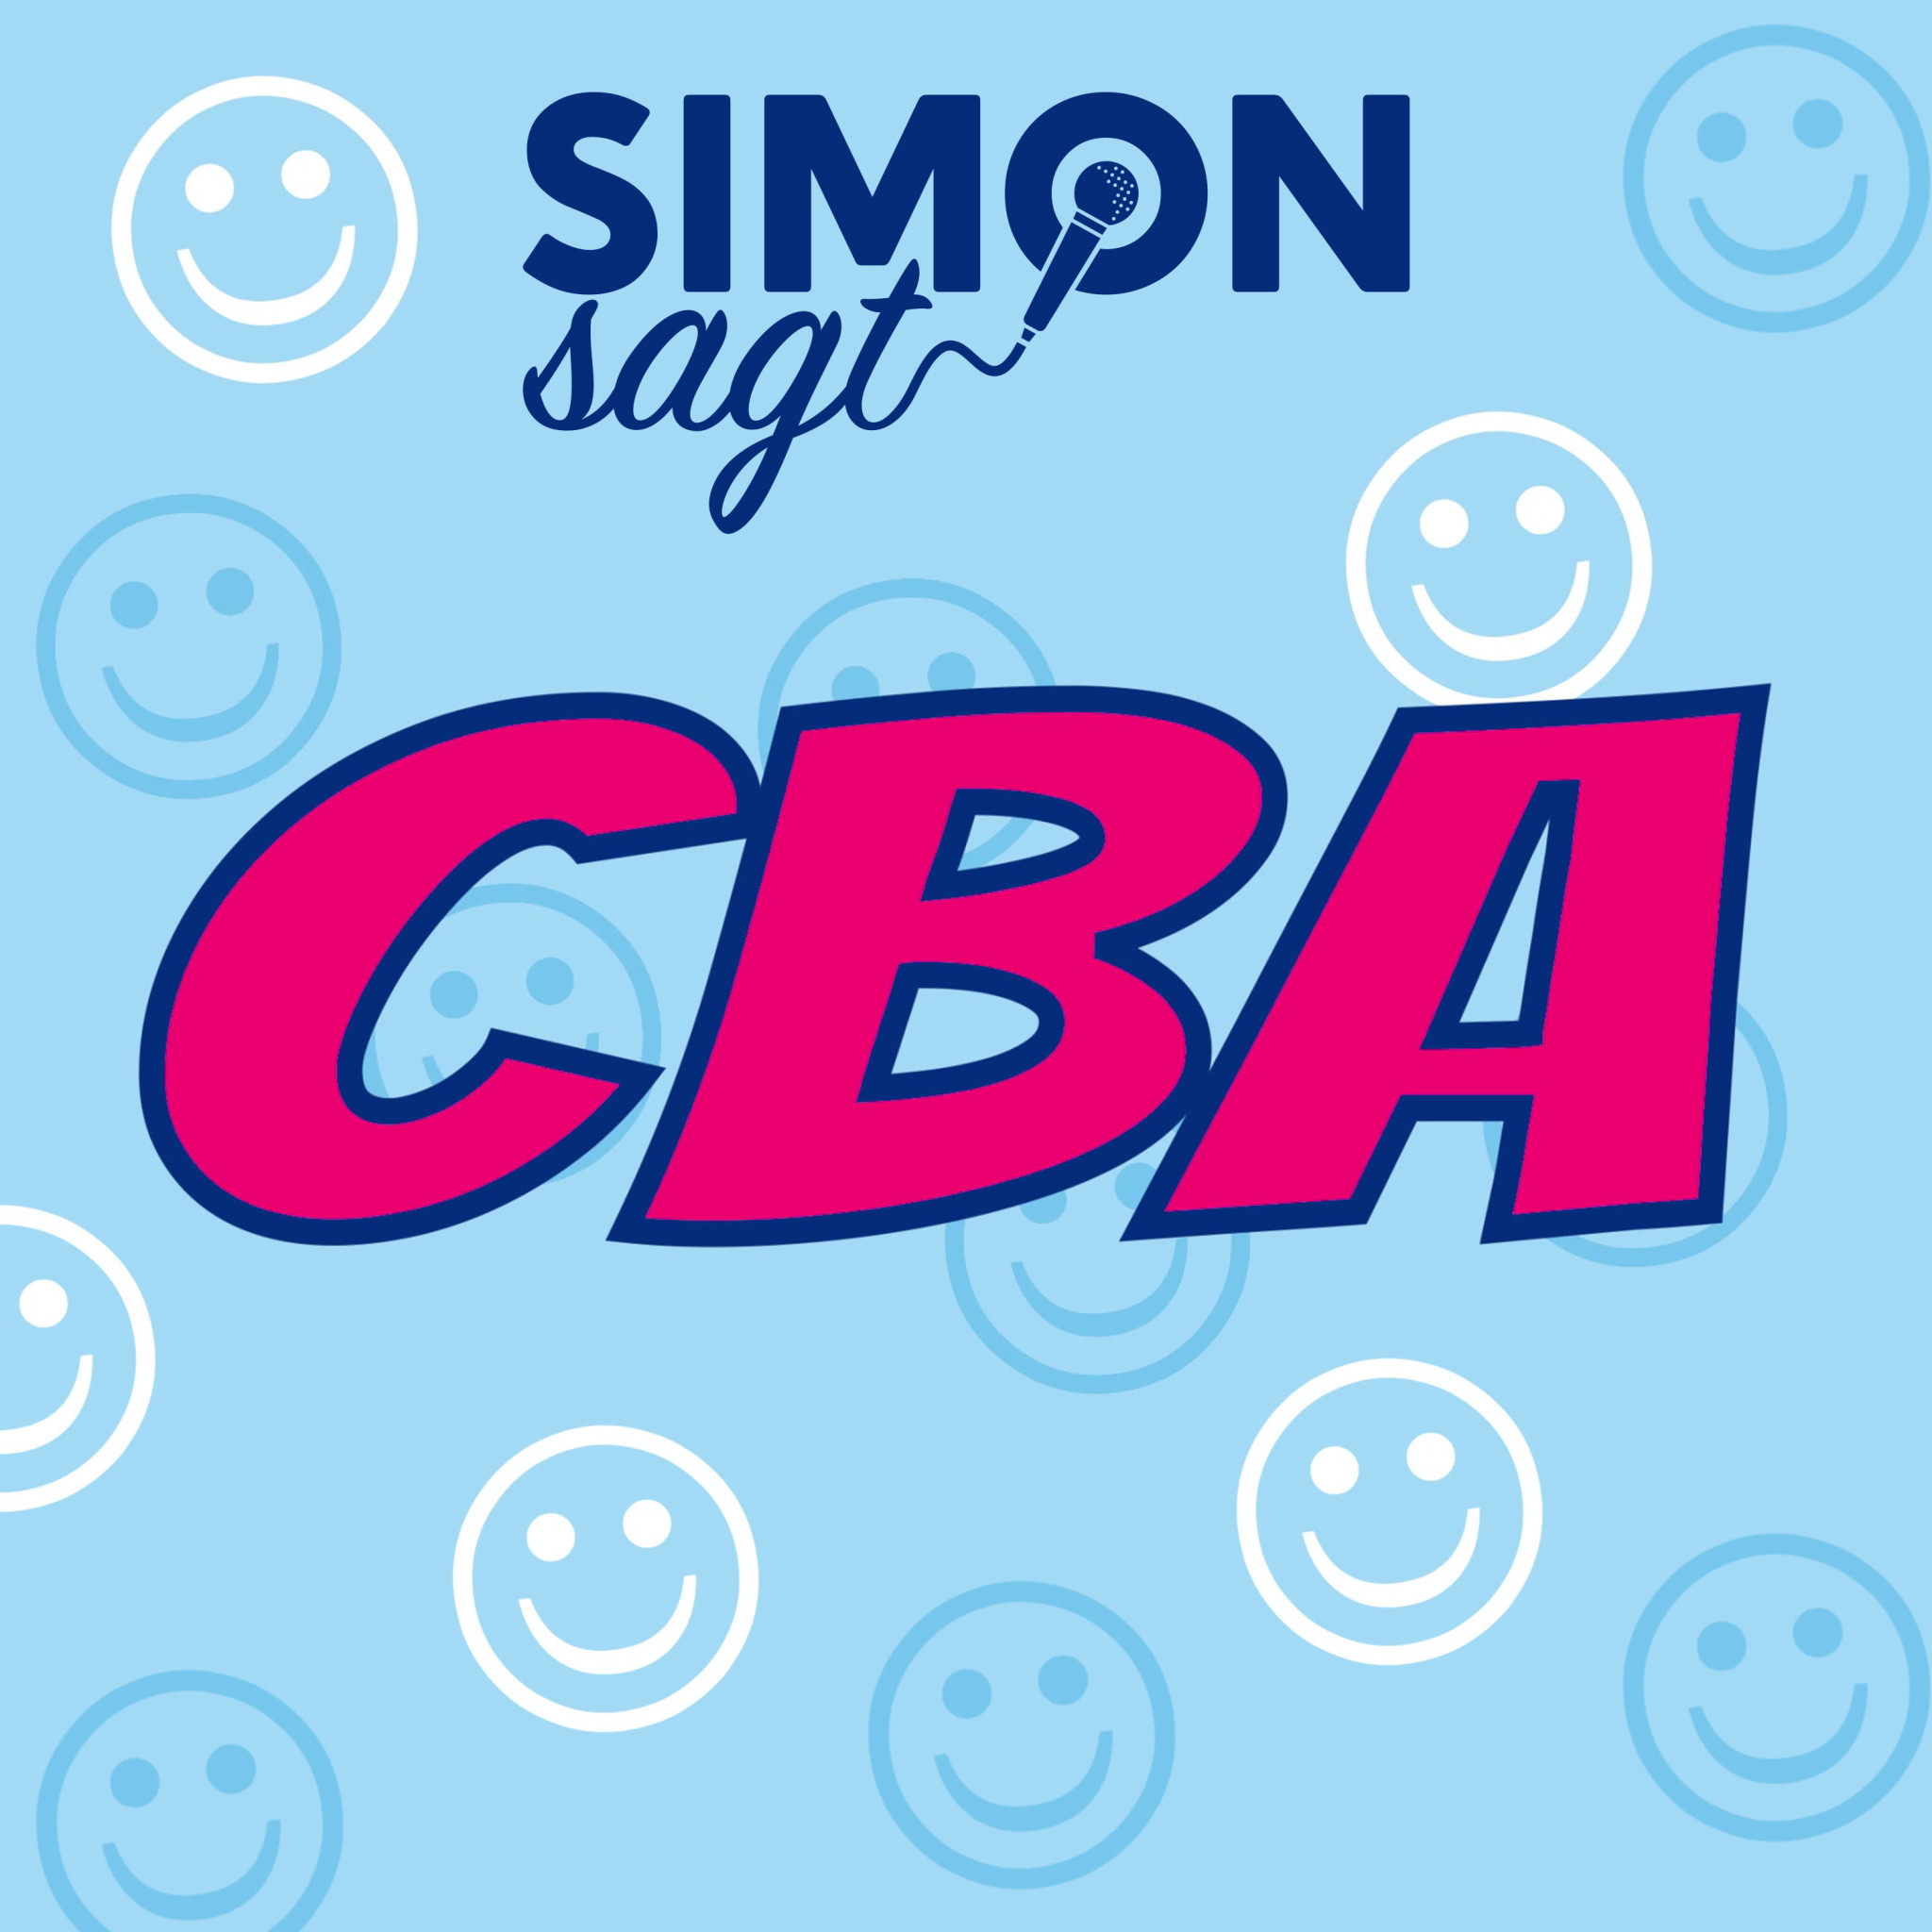 Simon sagt CBA Lyric Video Cover